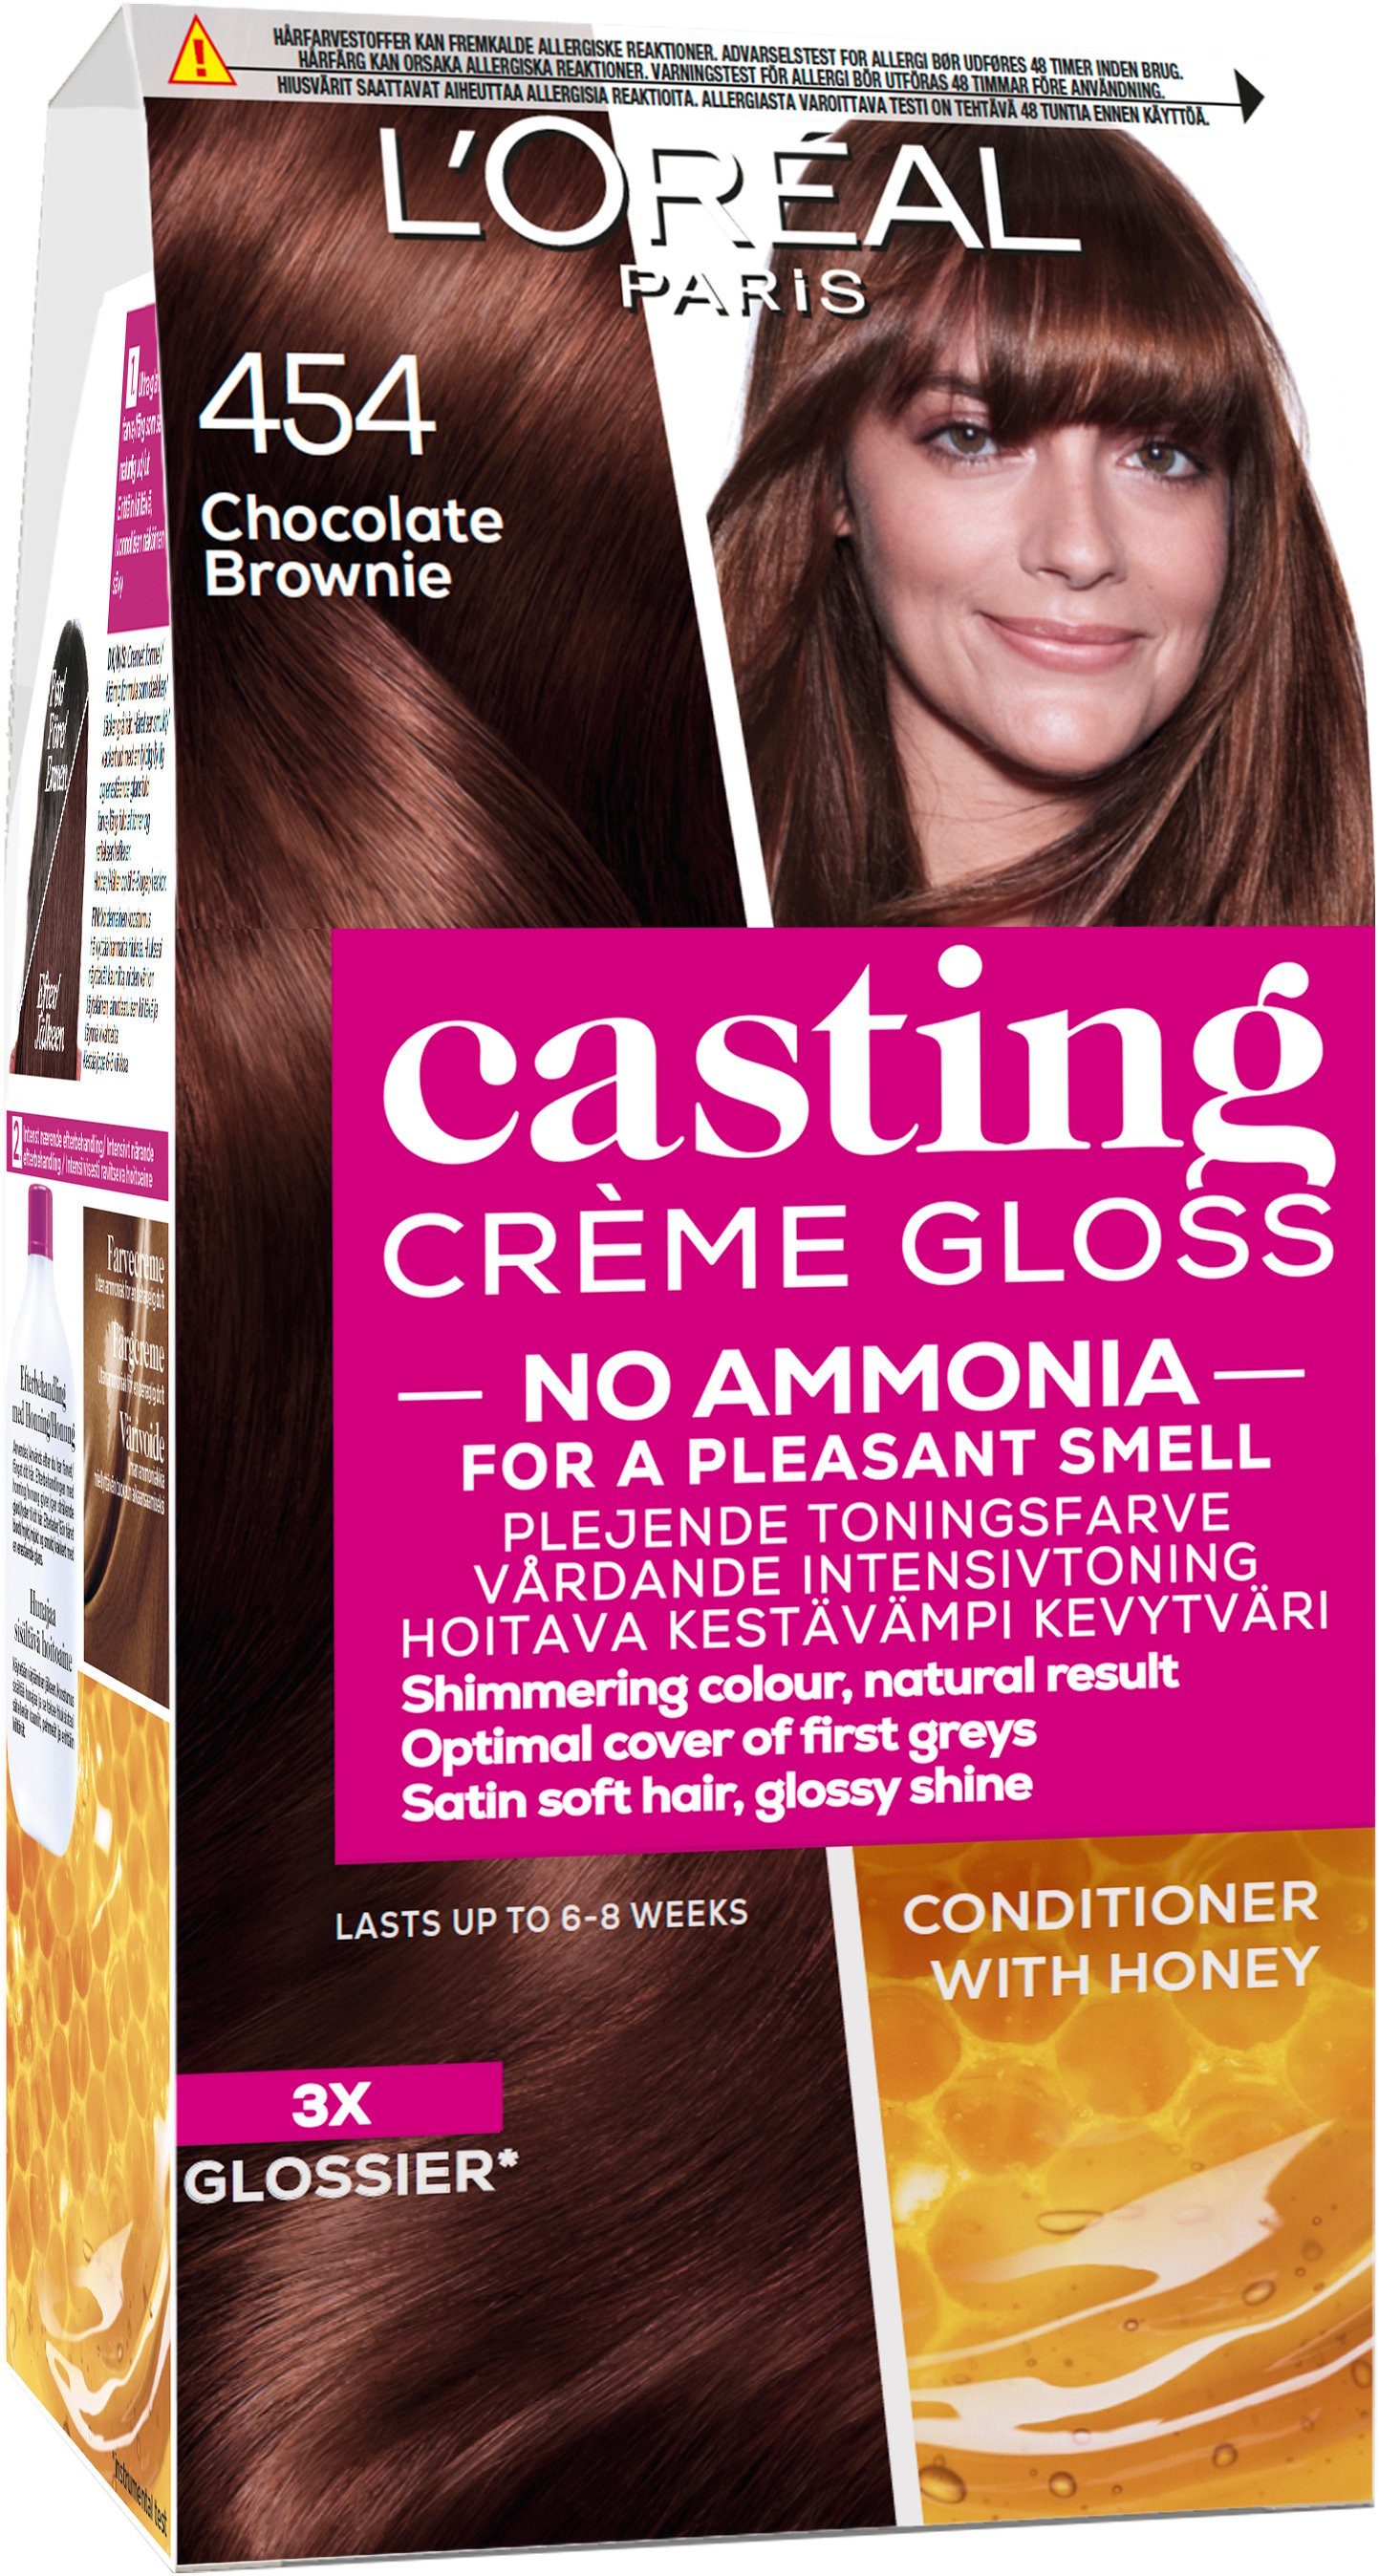 L'Oréal Paris Casting Creme Gloss 454 Chocolate Brownie